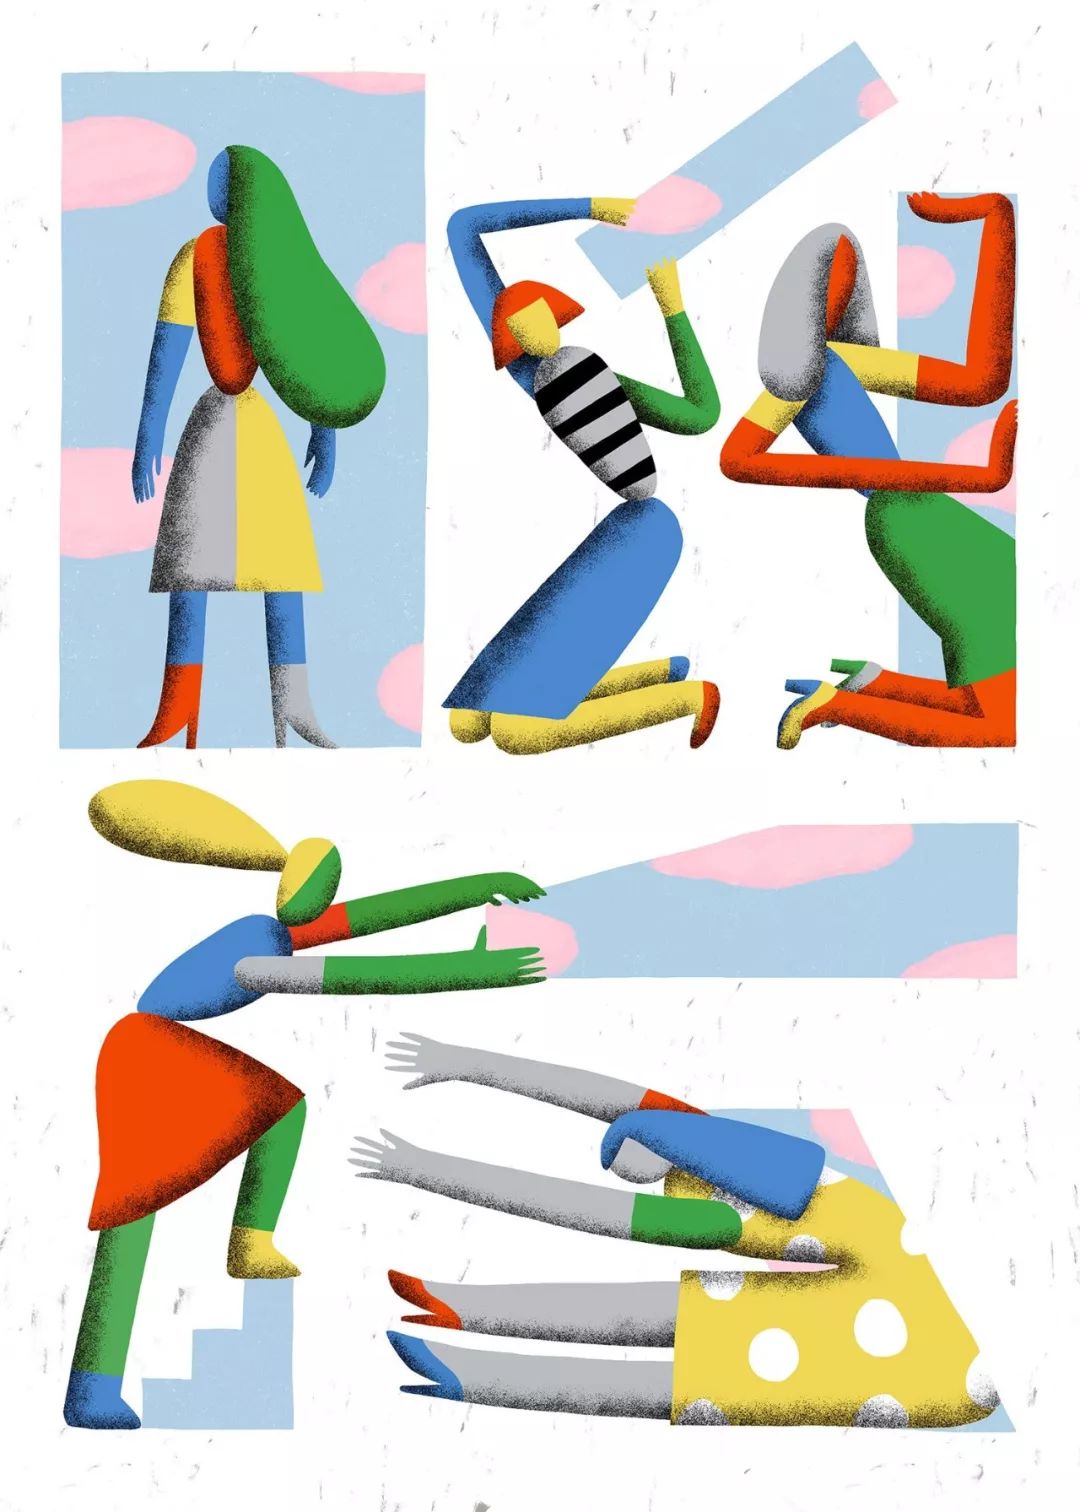 大胆的着色 夸张的造型: Anastacia Sholik插画欣赏